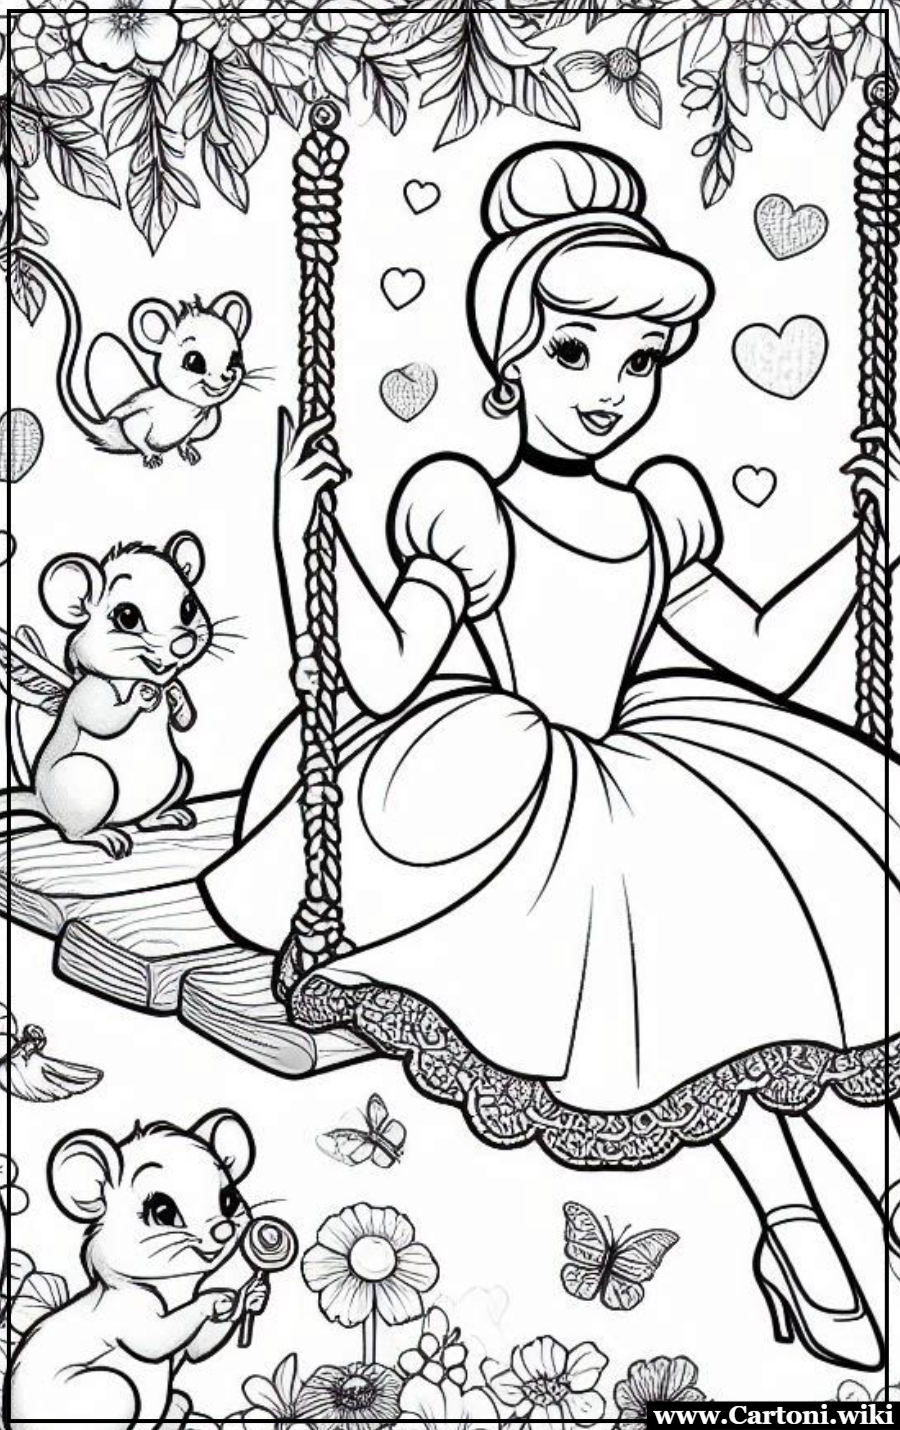 Immagine Cinderella da colorare Cenerentola,Disegni da colorare,Immagini da colorare,immagini da stampare,stampa e colora